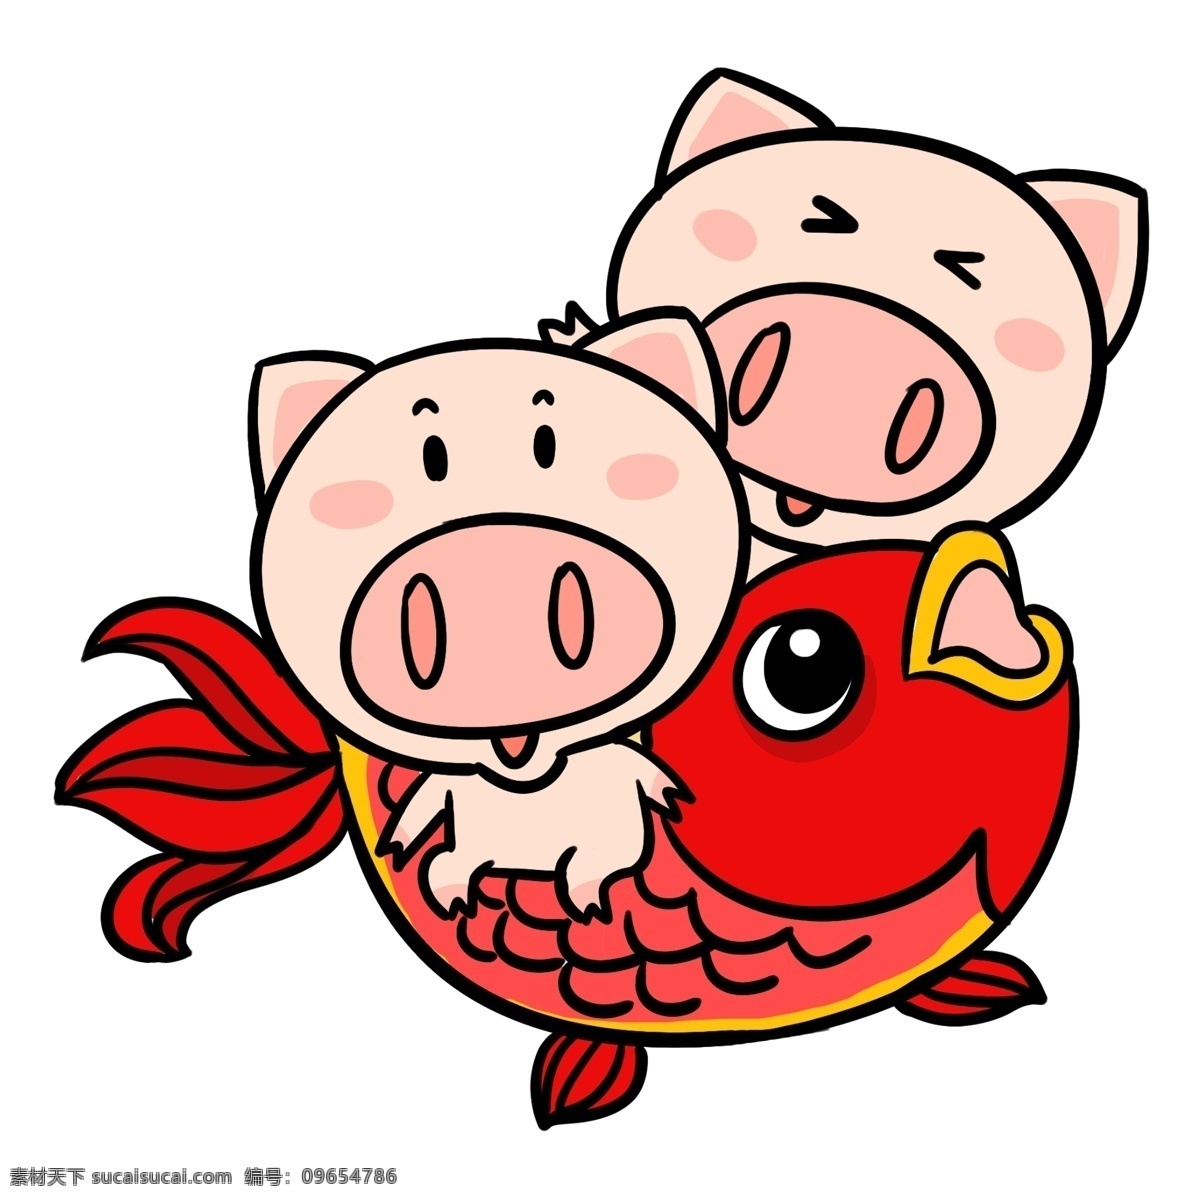 锦鲤 可爱 卡通 猪 插画 贺 新年 合集 挑灯笼的小猪 对联 小 锦鲤小猪 吉星高照 飞翔小猪